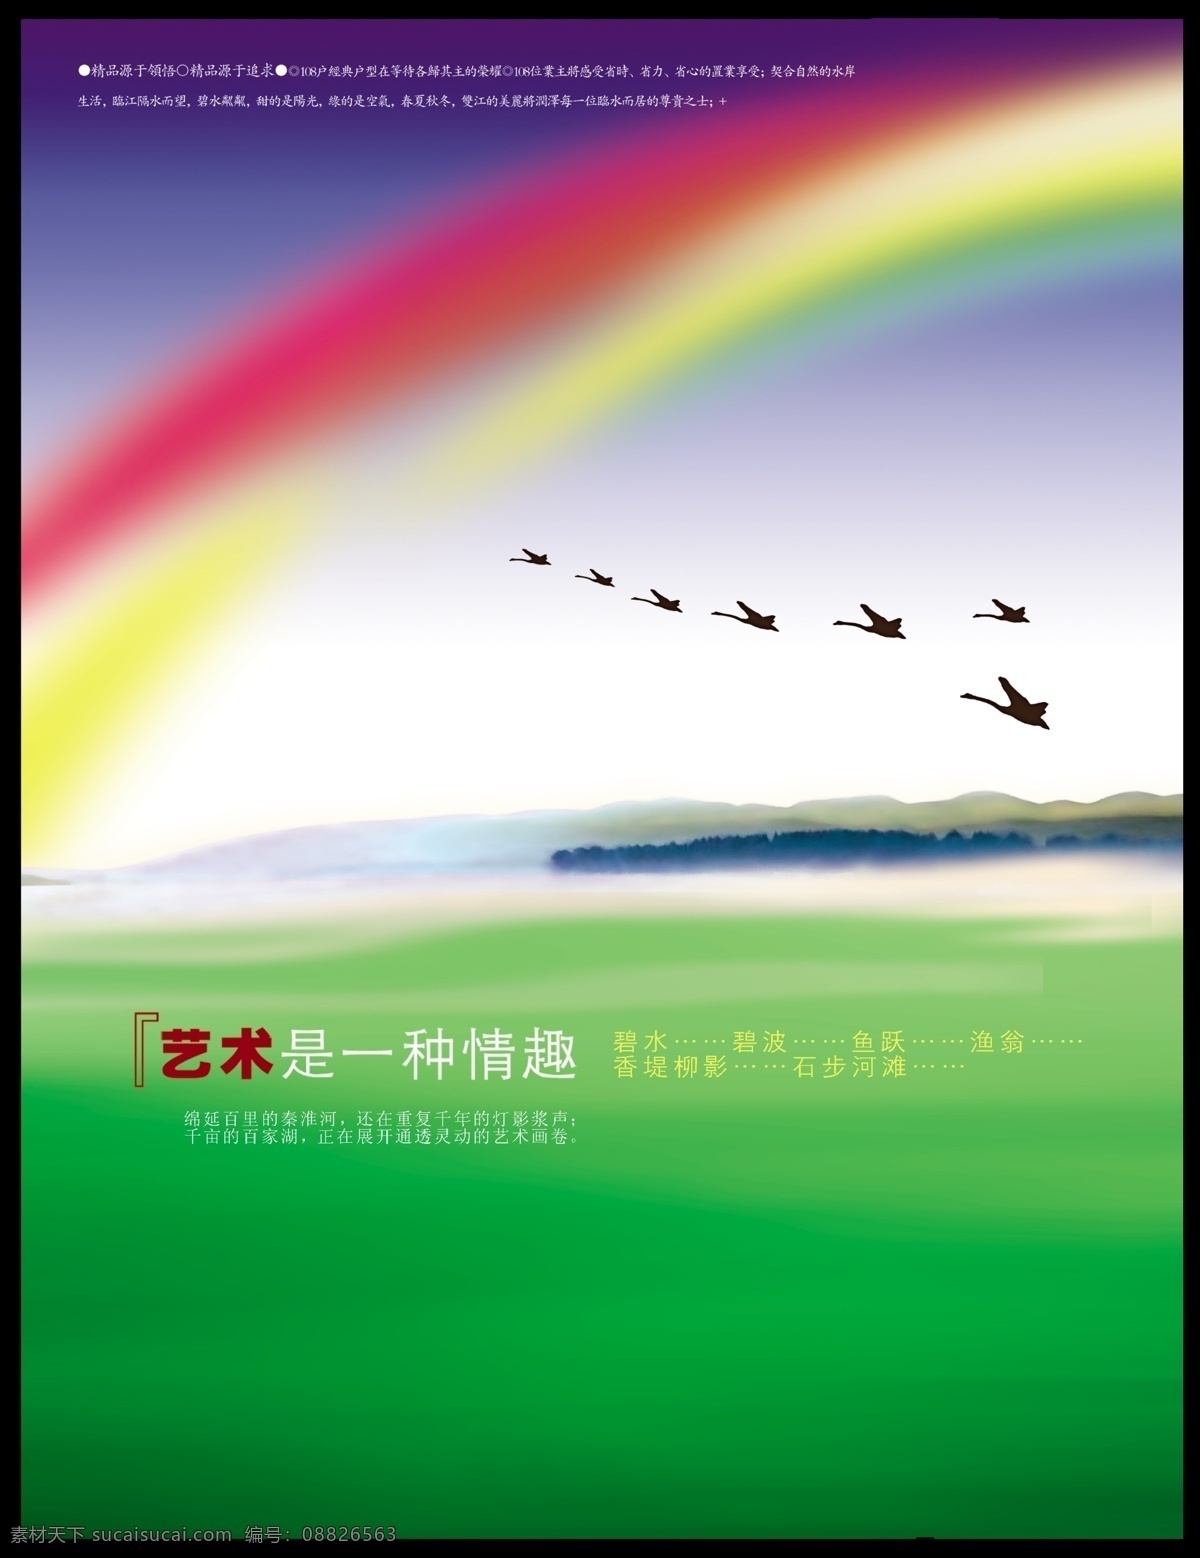 艺术 种 情趣 海报 彩虹 燕子 海报模板 海报素材 海报下载 源文件 绿色